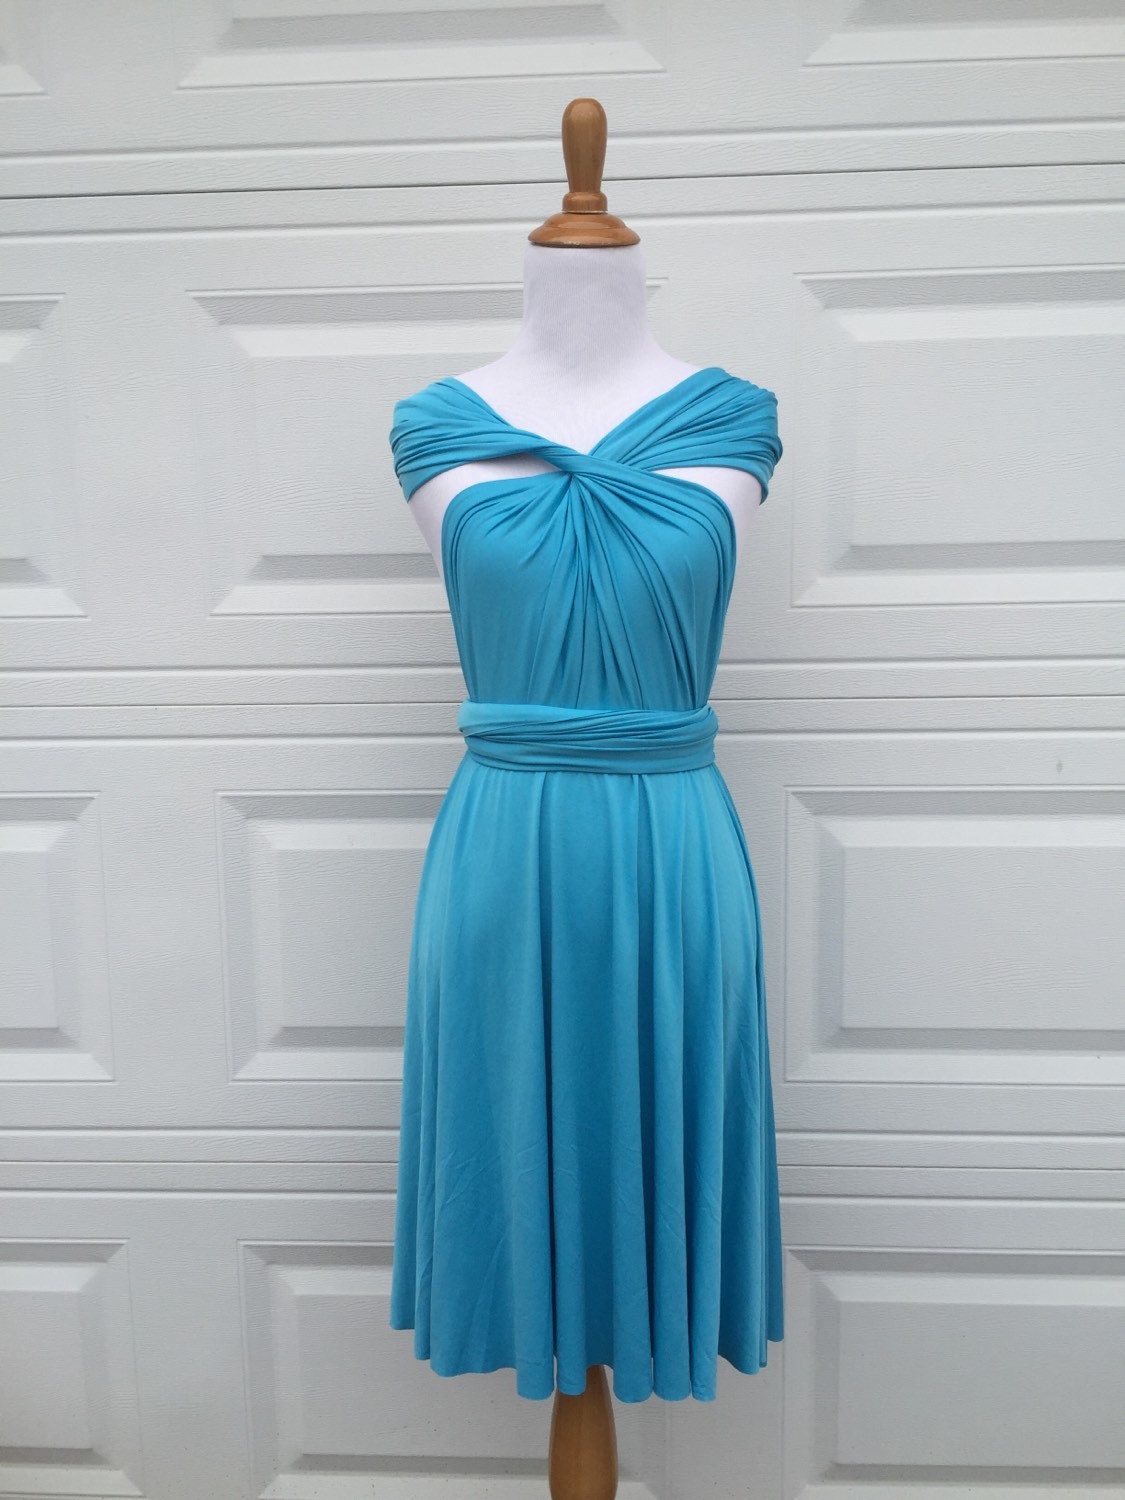 Cerulean blue dressBridesmaid Dress Infinity by ScholleDress